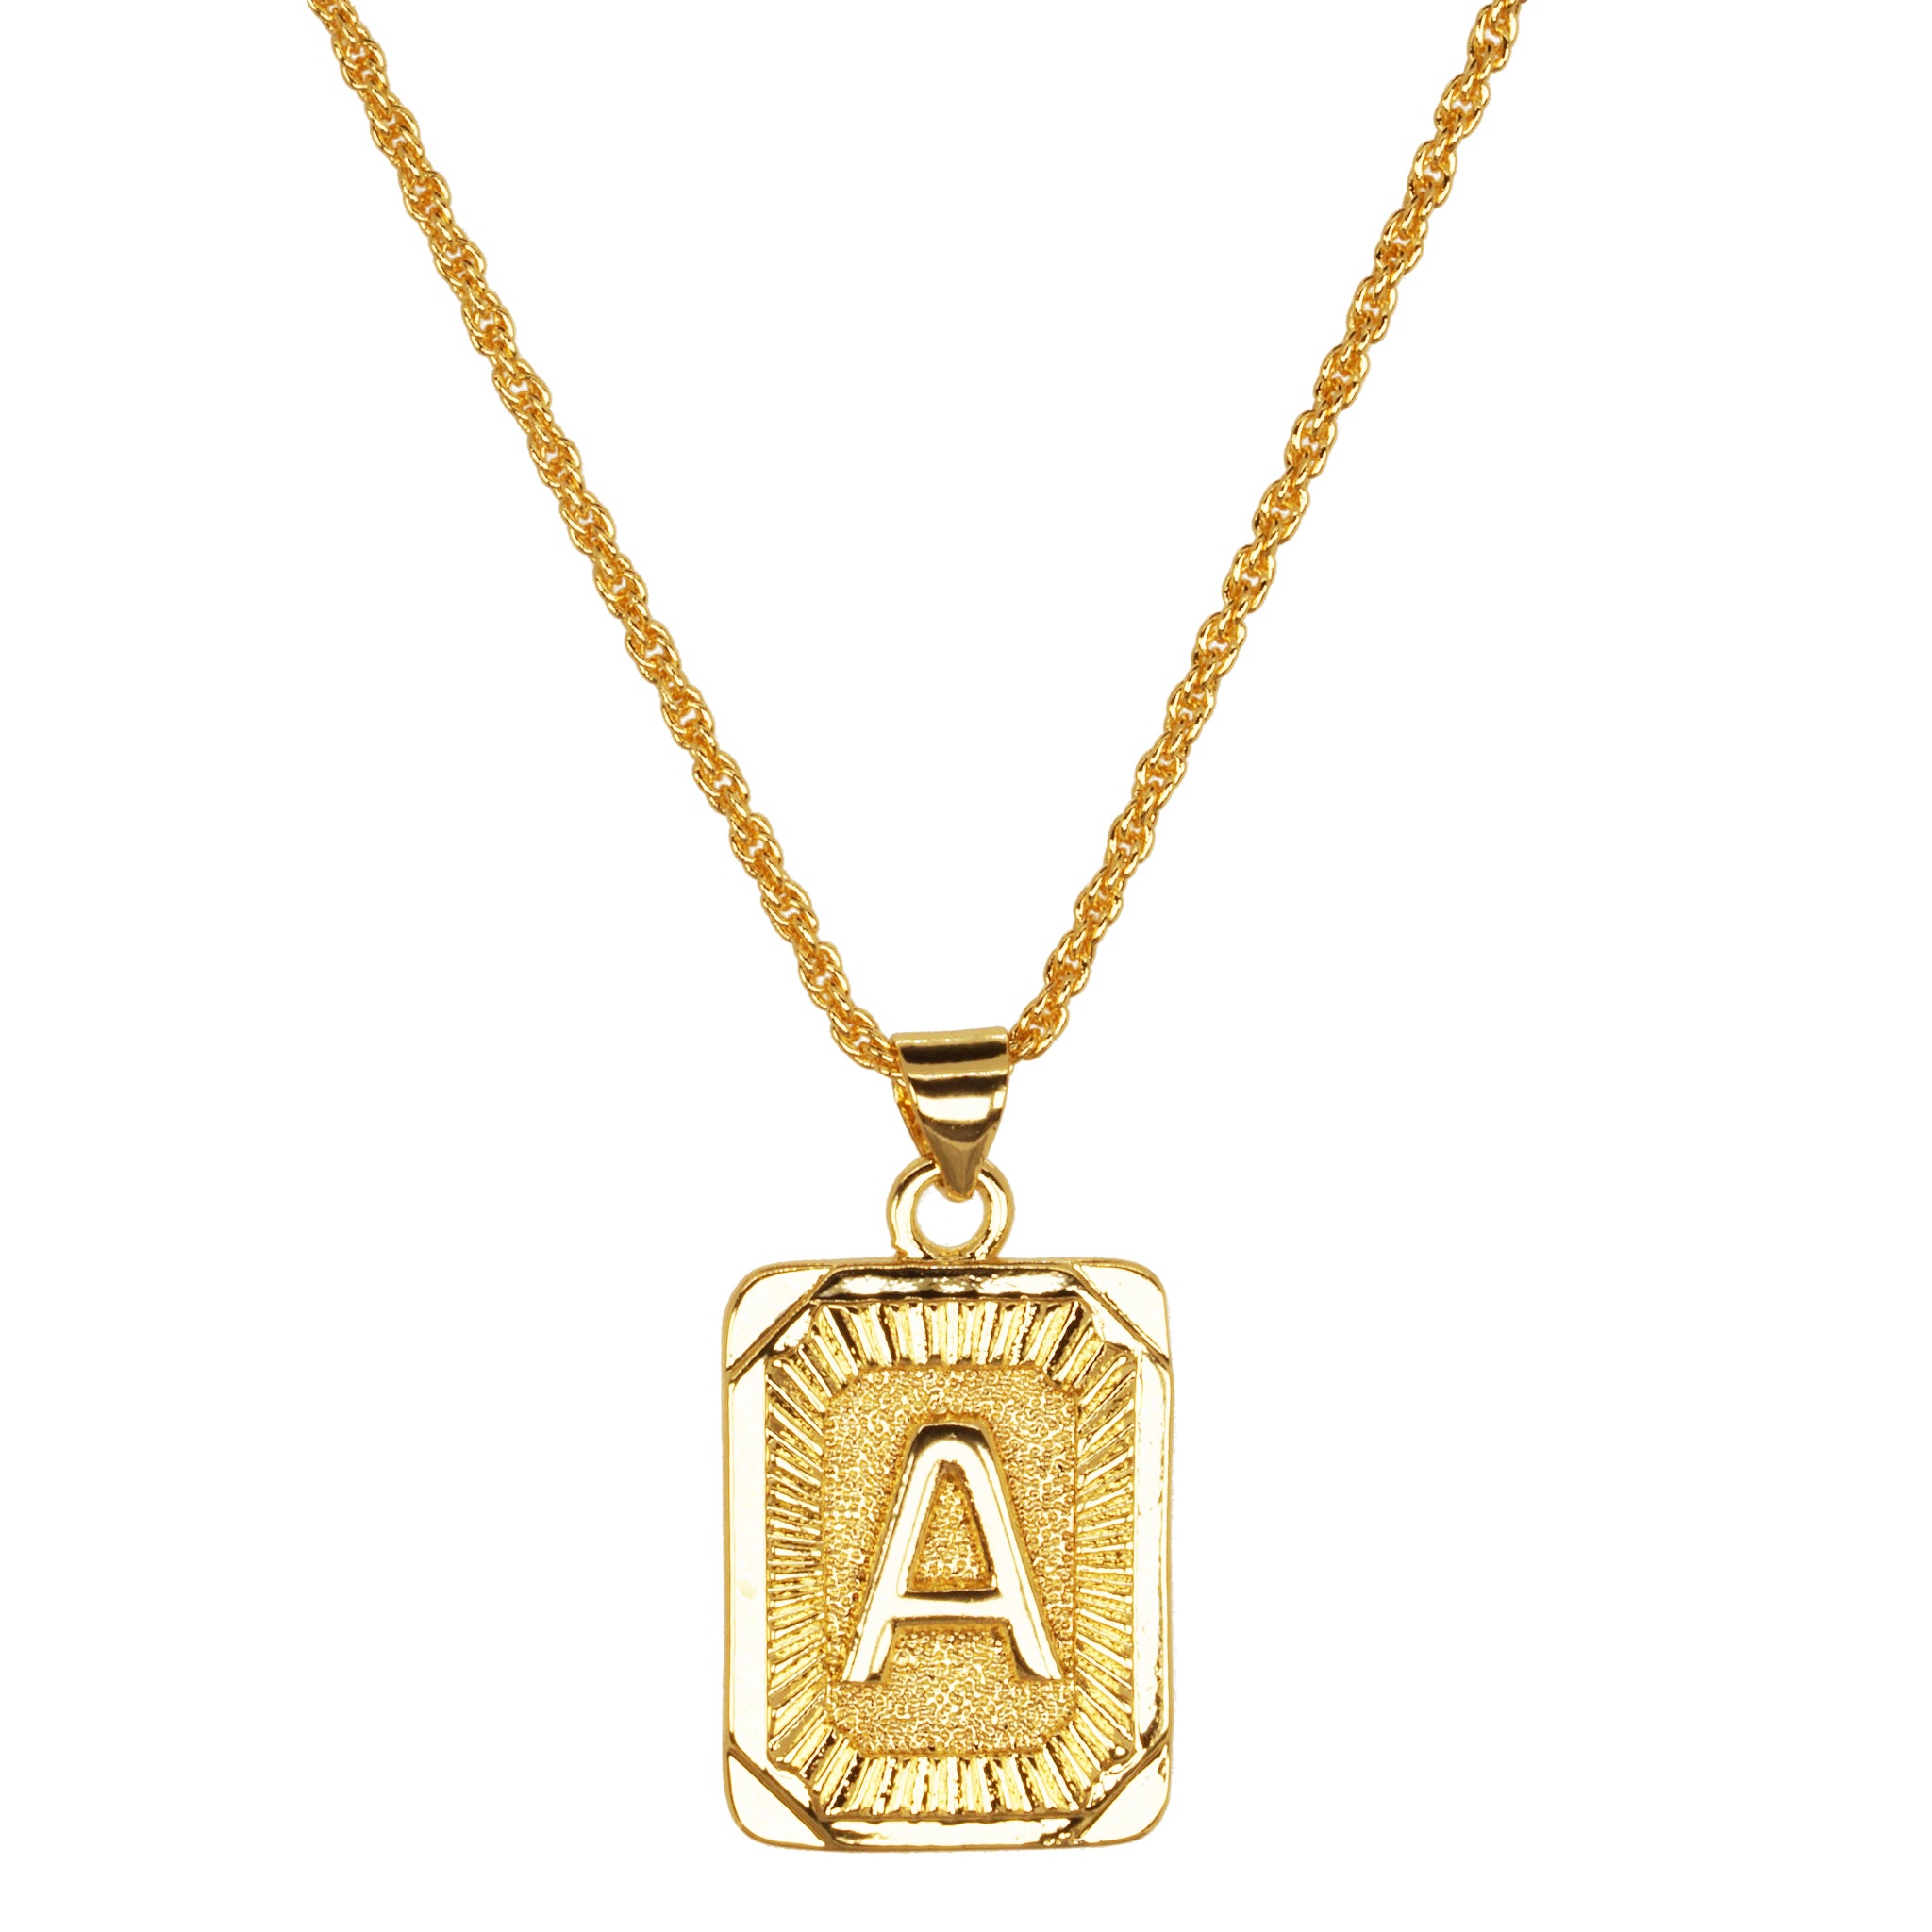 Gold Necklace Letter Pendant - Shop on Pinterest